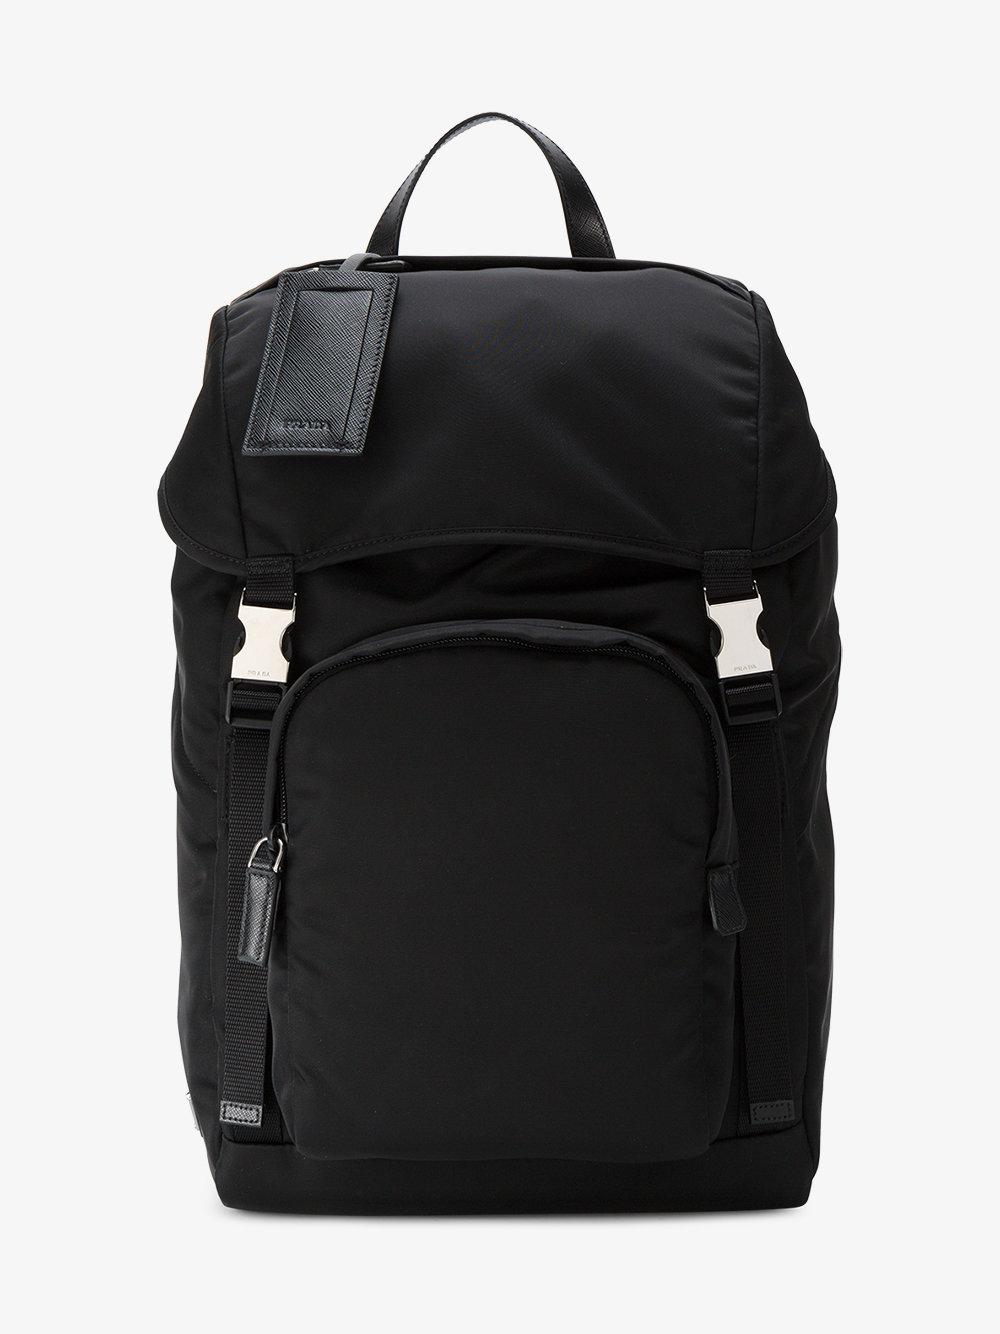 Prada Nylon Backpack in Black for Men - Lyst